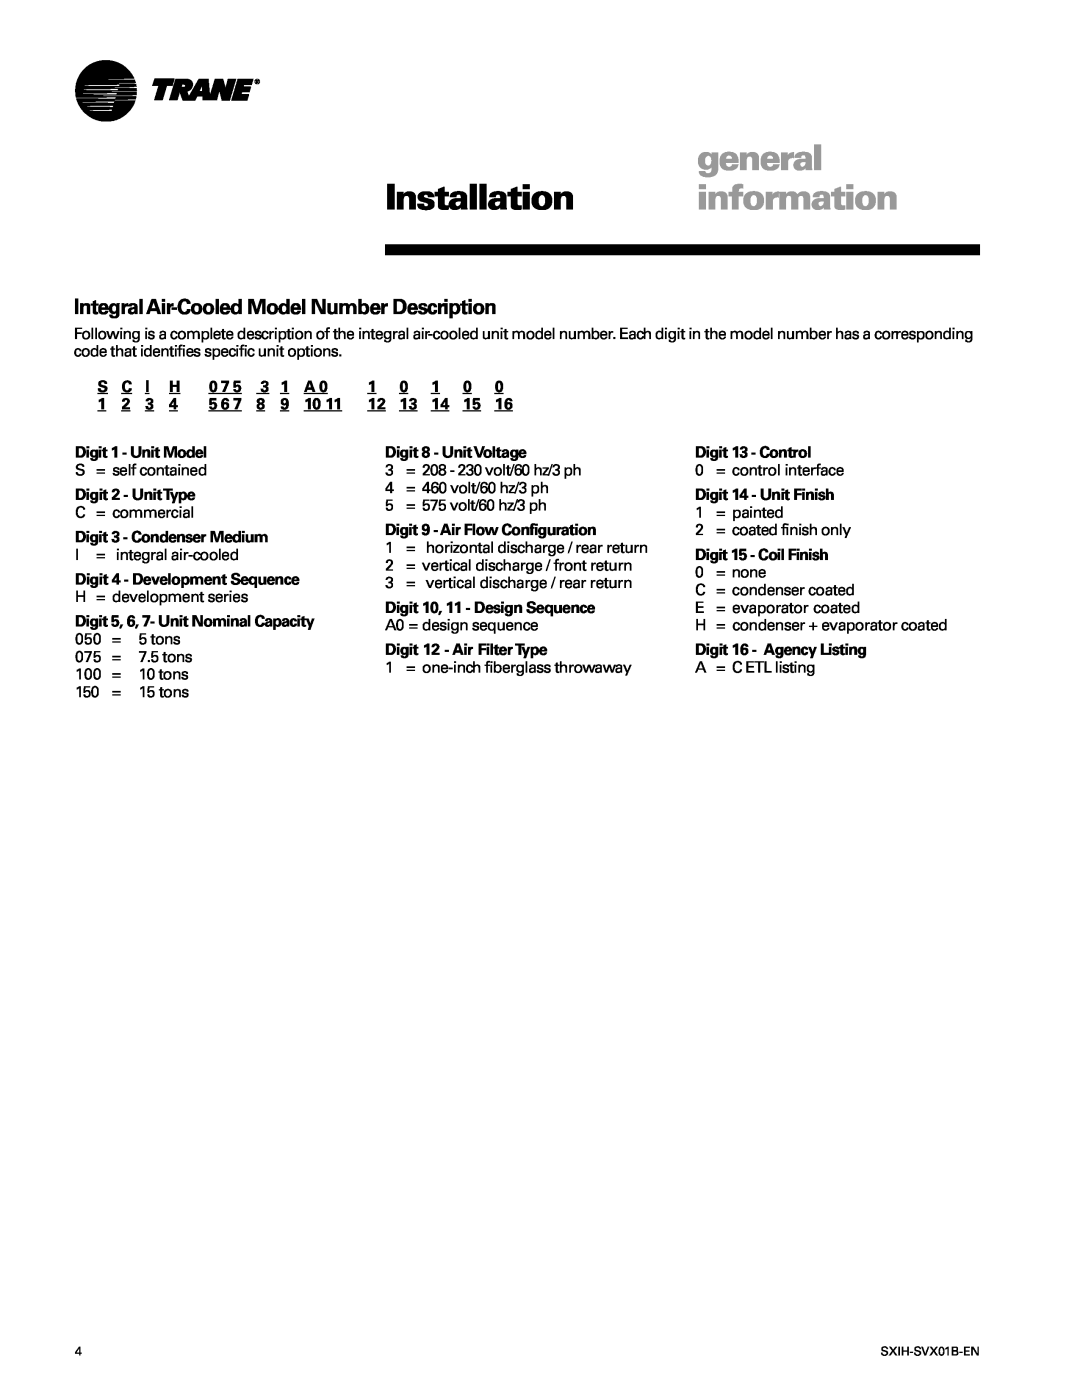 Trane SCIH manual general, Installation information, Integral Air-CooledModel Number Description 